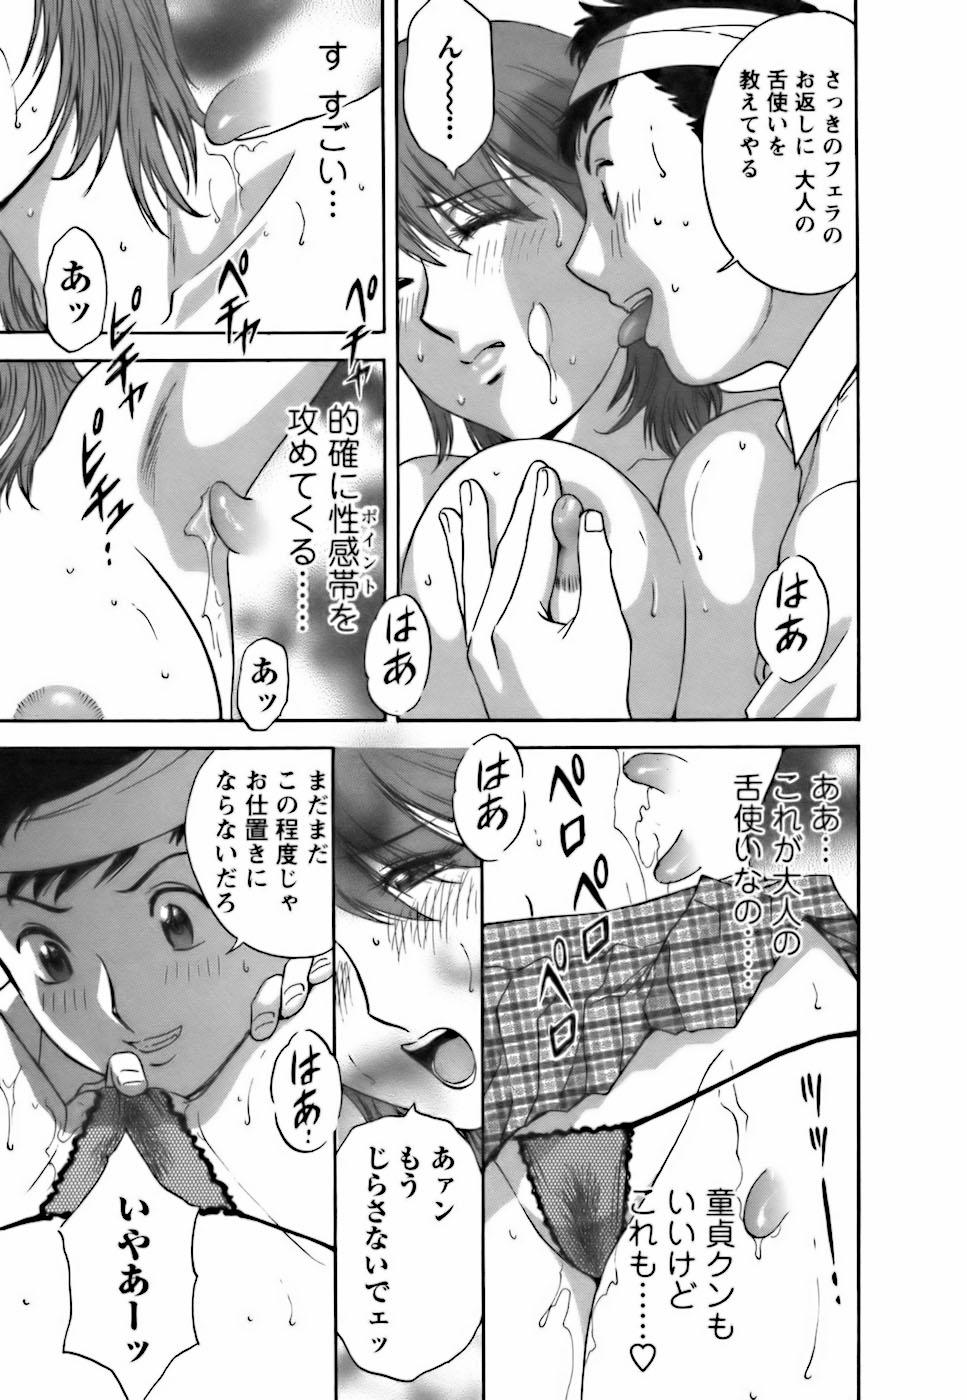 [Hidemaru] Mo-Retsu! Boin Sensei (Boing Boing Teacher) Vol.3 122